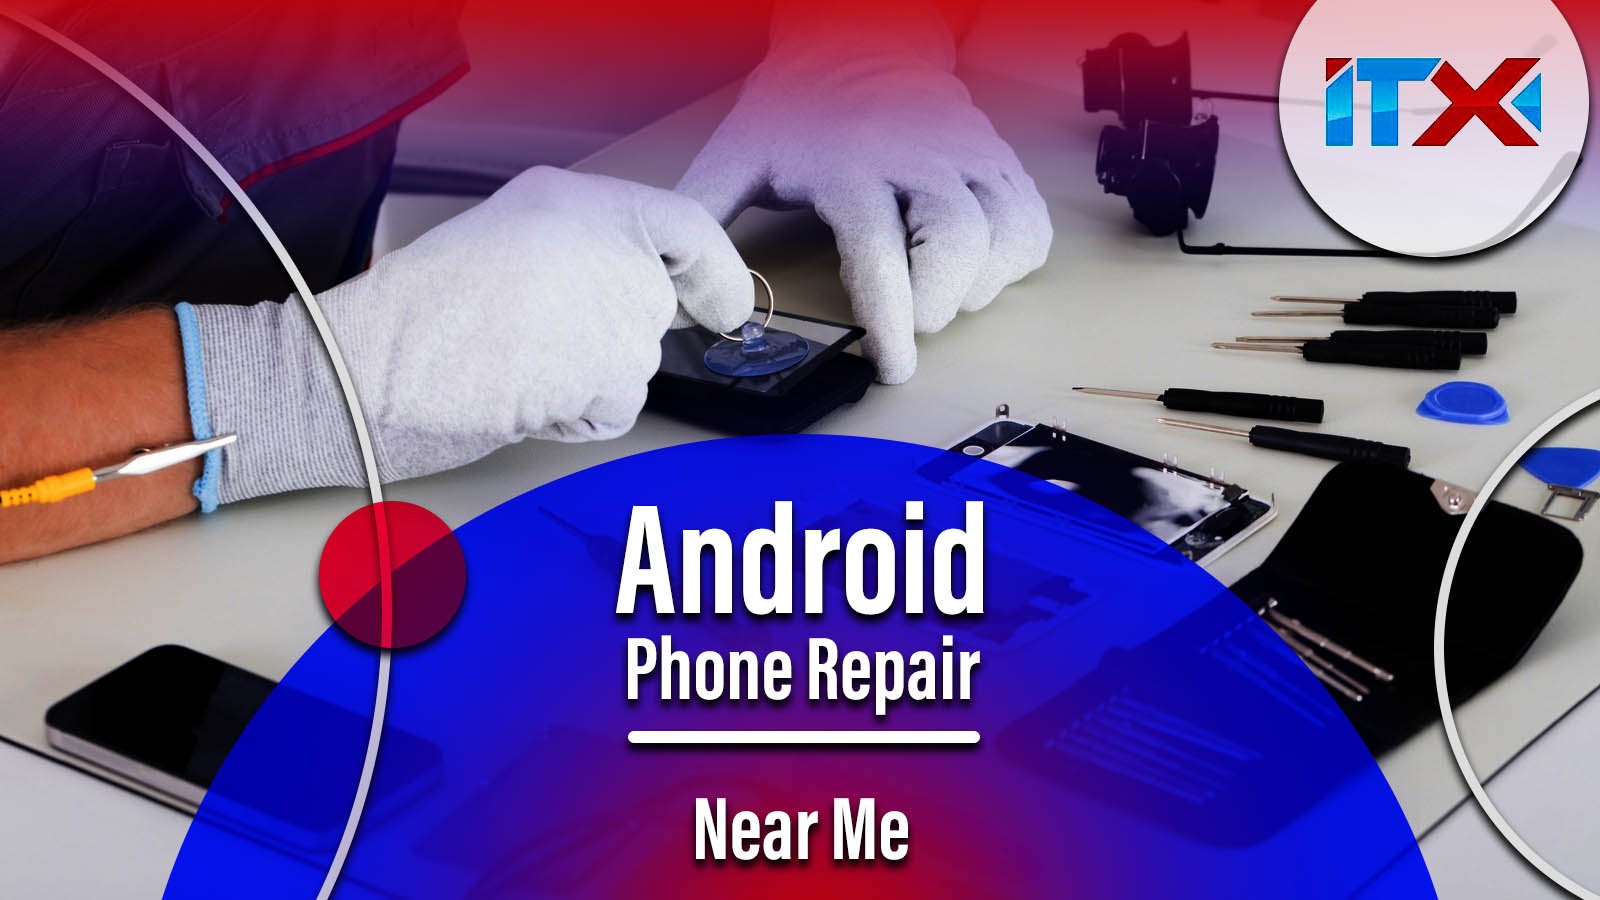 Android Phone Repair near Me